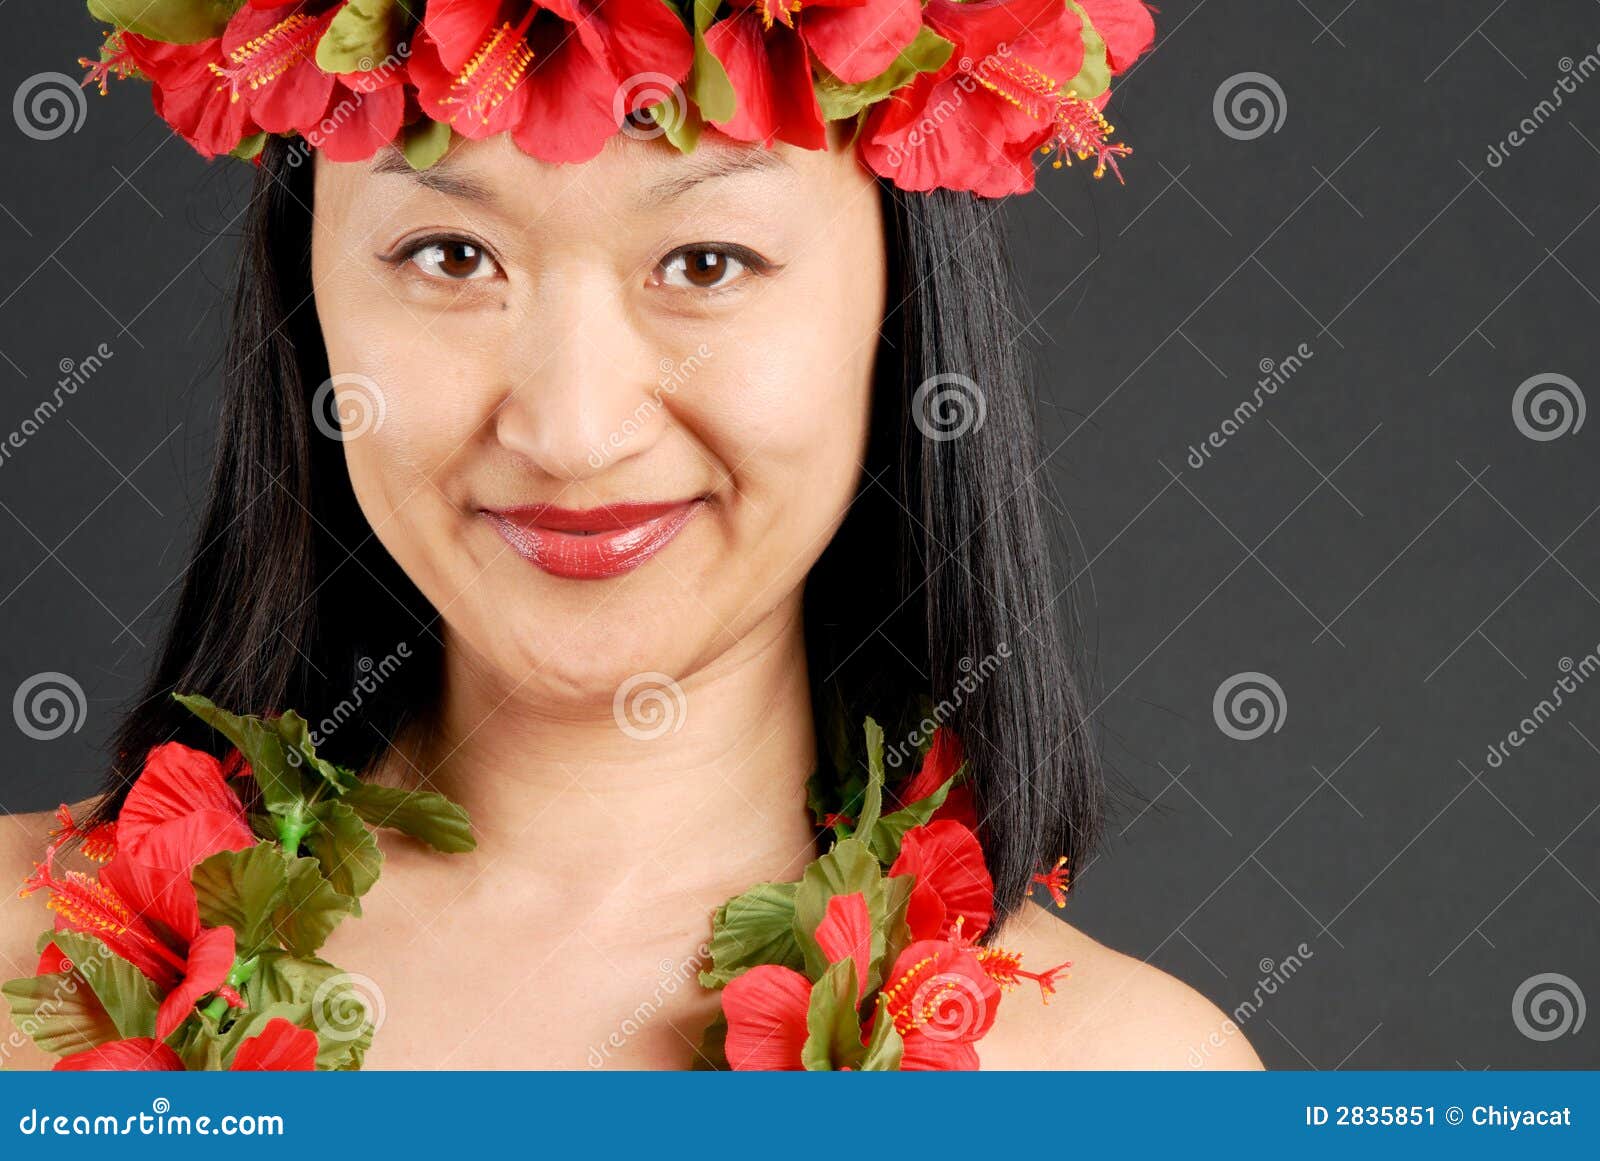 女花童夏威夷列伊纵向 库存图片. 图片 包括有 果子, 纵向, 相当, 表面, 微笑, 兰花, 列伊, 菠萝 - 9600081